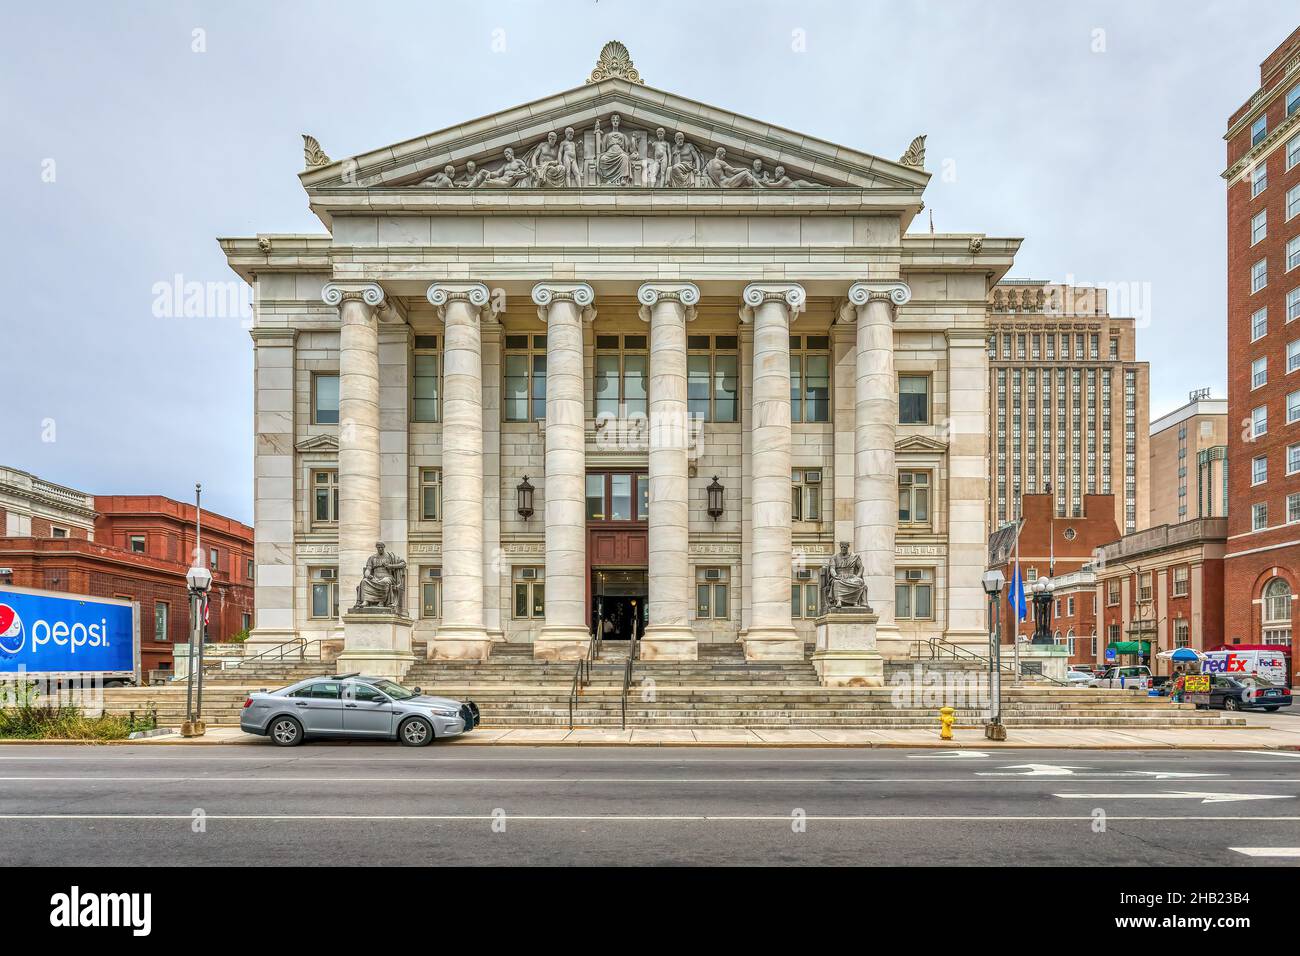 Il tribunale della contea di New Haven, noto anche come Corte superiore, è stato completato nel 1917 sul lato nord di New Haven Green. William Allen, Richard Williams, architetti. Foto Stock